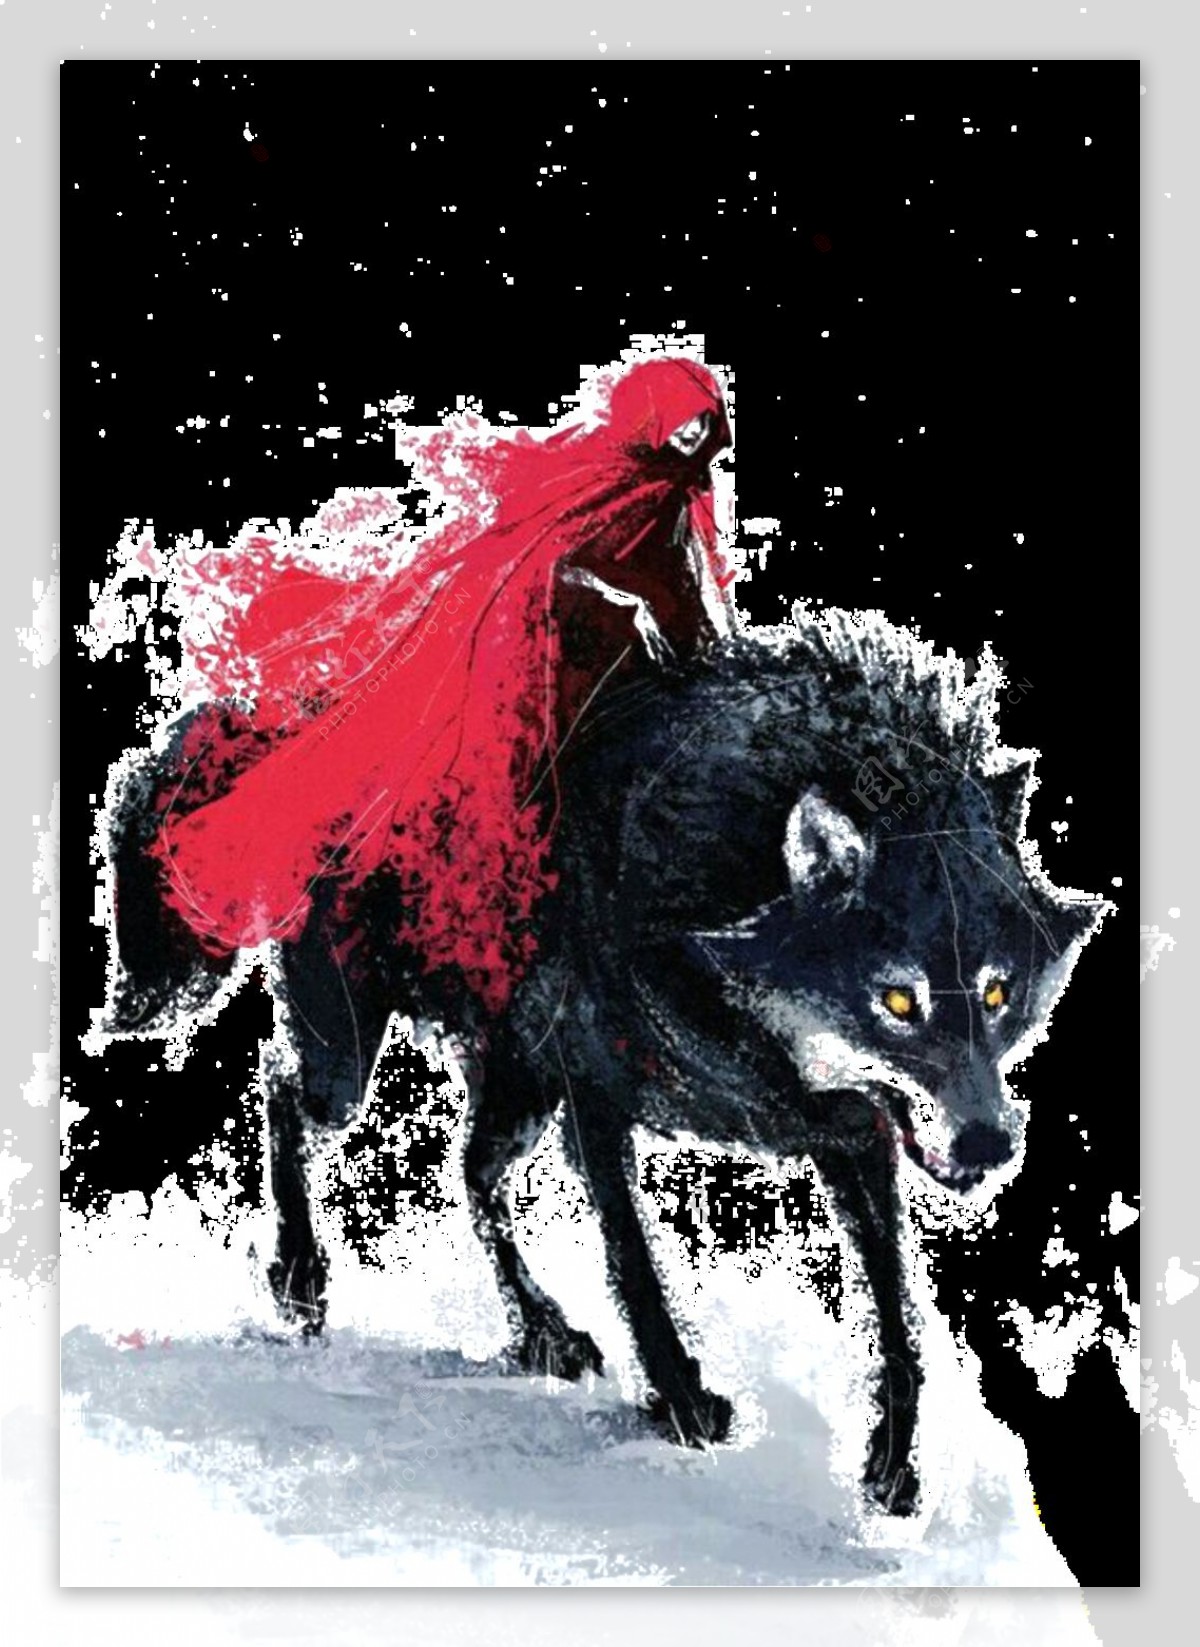 彩绘狼背上的红衣巫婆图案